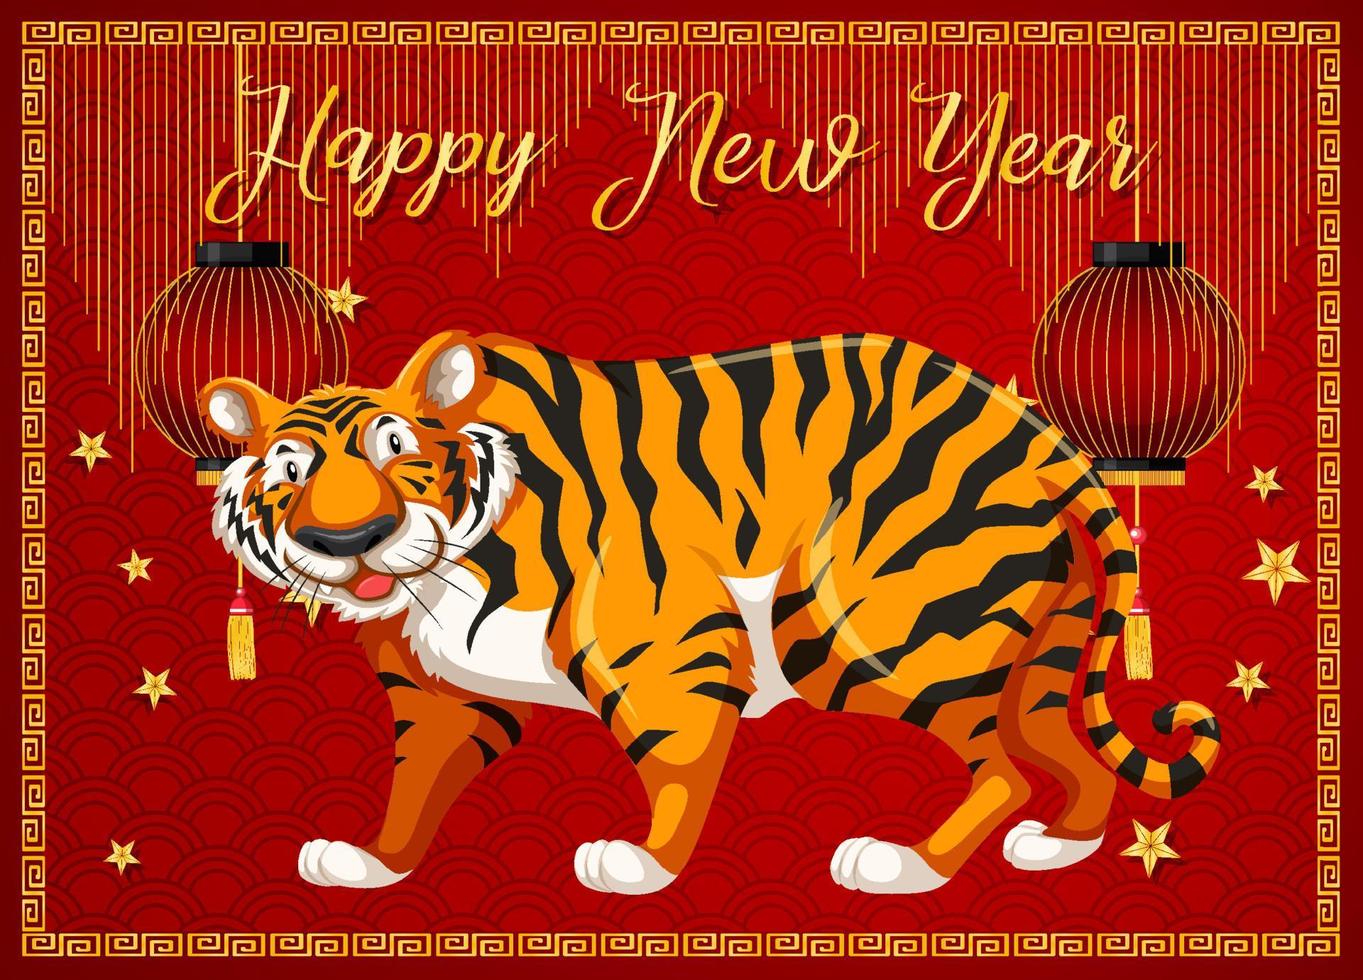 gott nytt år med tiger på röd bakgrund vektor